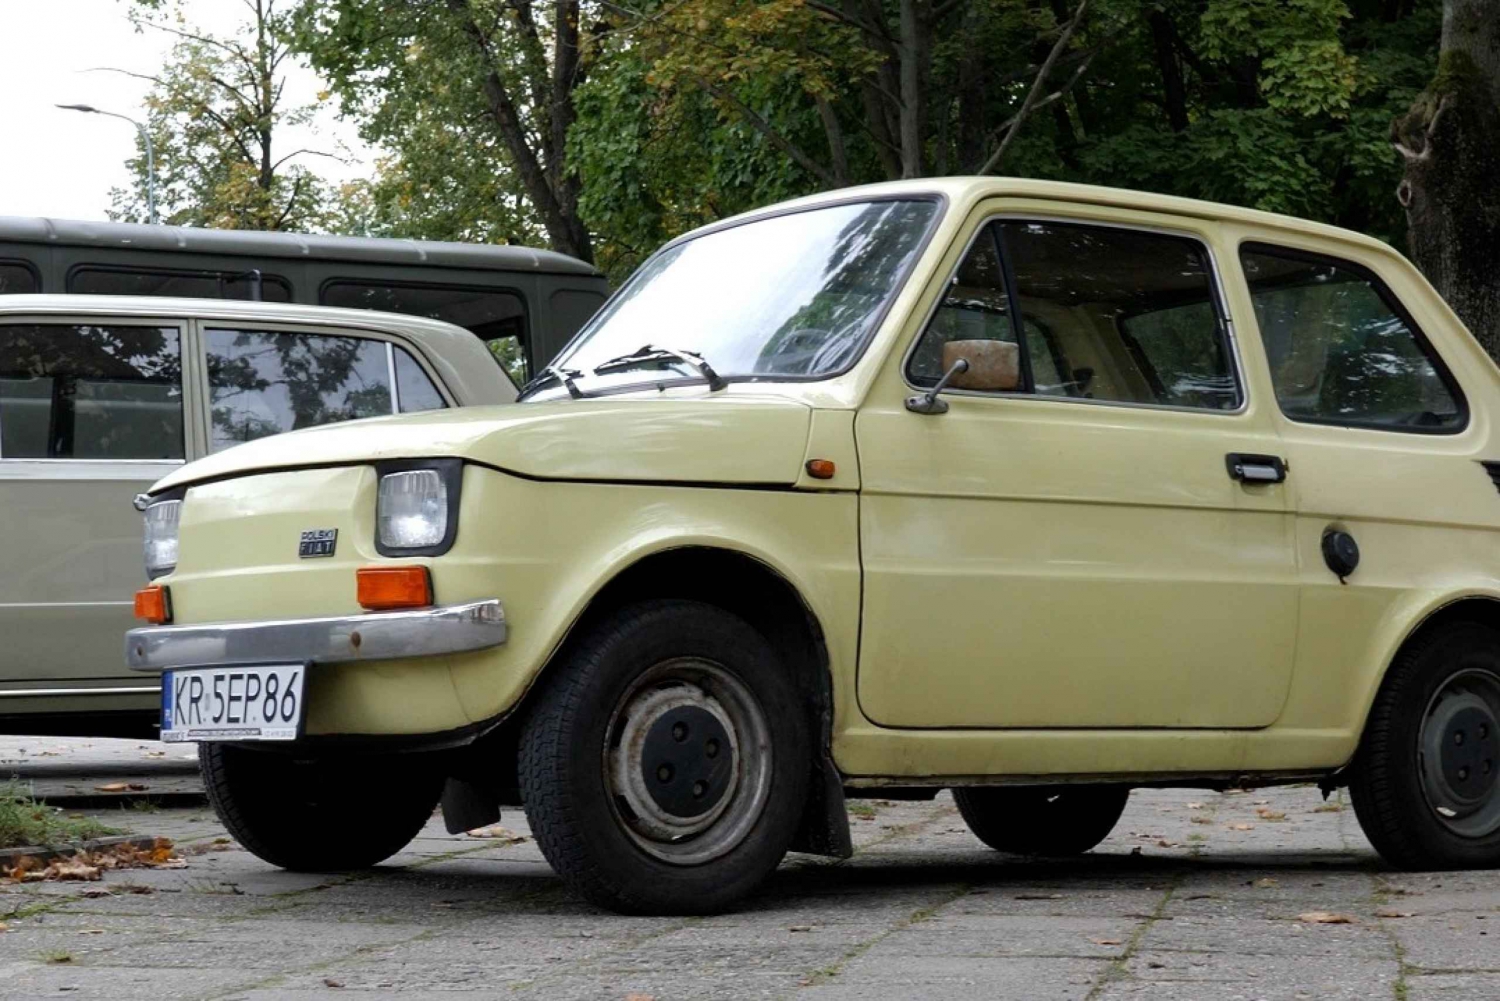 Cracovie : Visite guidée de Nowa Huta dans une voiture de l'ère communiste